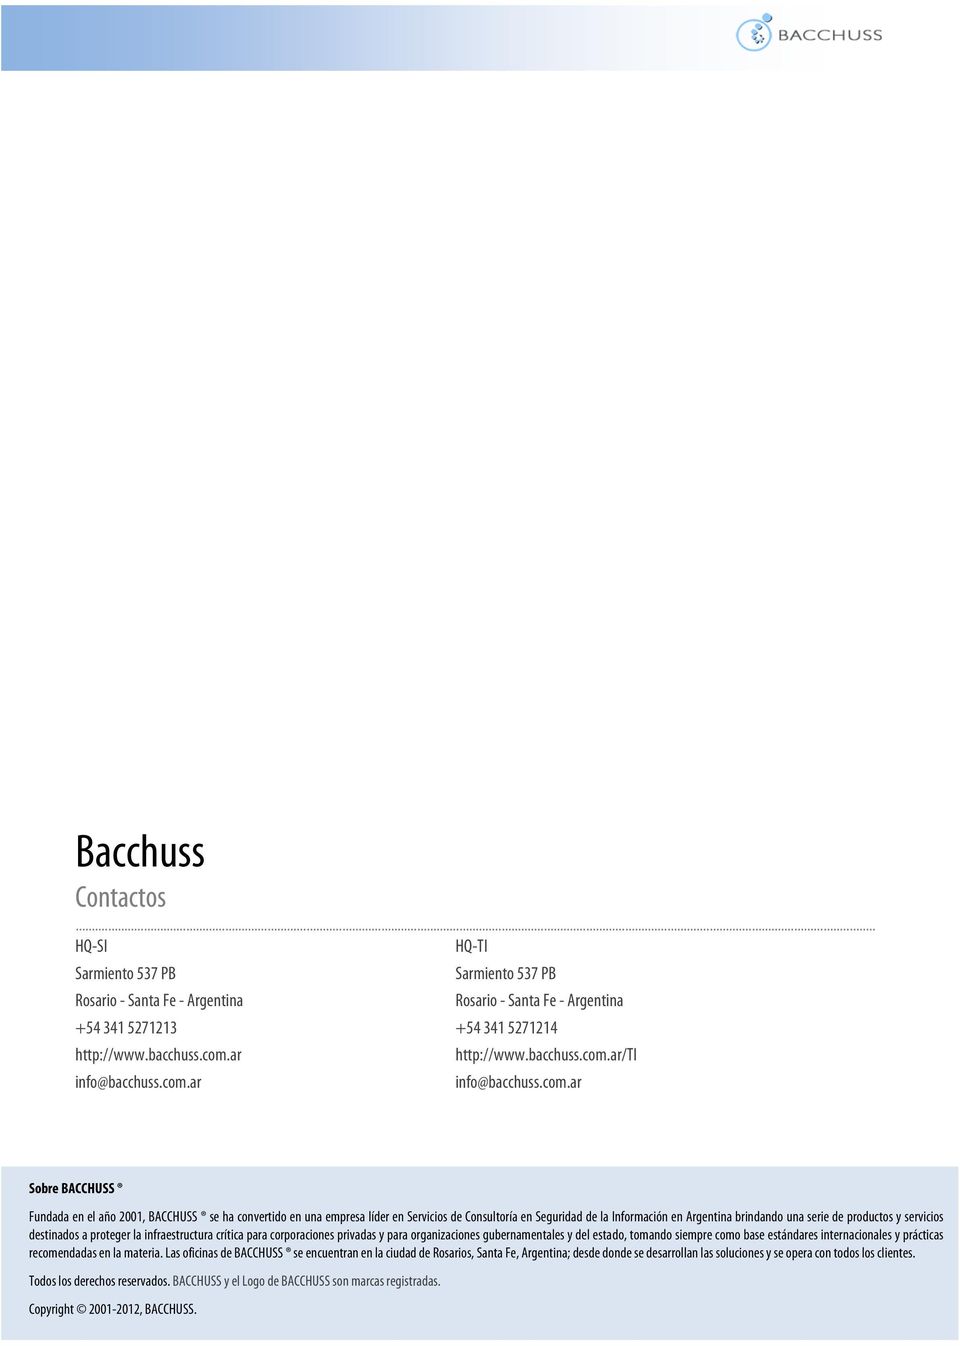 ar Sobre BACCHUSS Fundada en el año 2001, BACCHUSS se ha convertido en una empresa líder en Servicios de Consultoría en Seguridad de la Información en Argentina brindando una serie de productos y